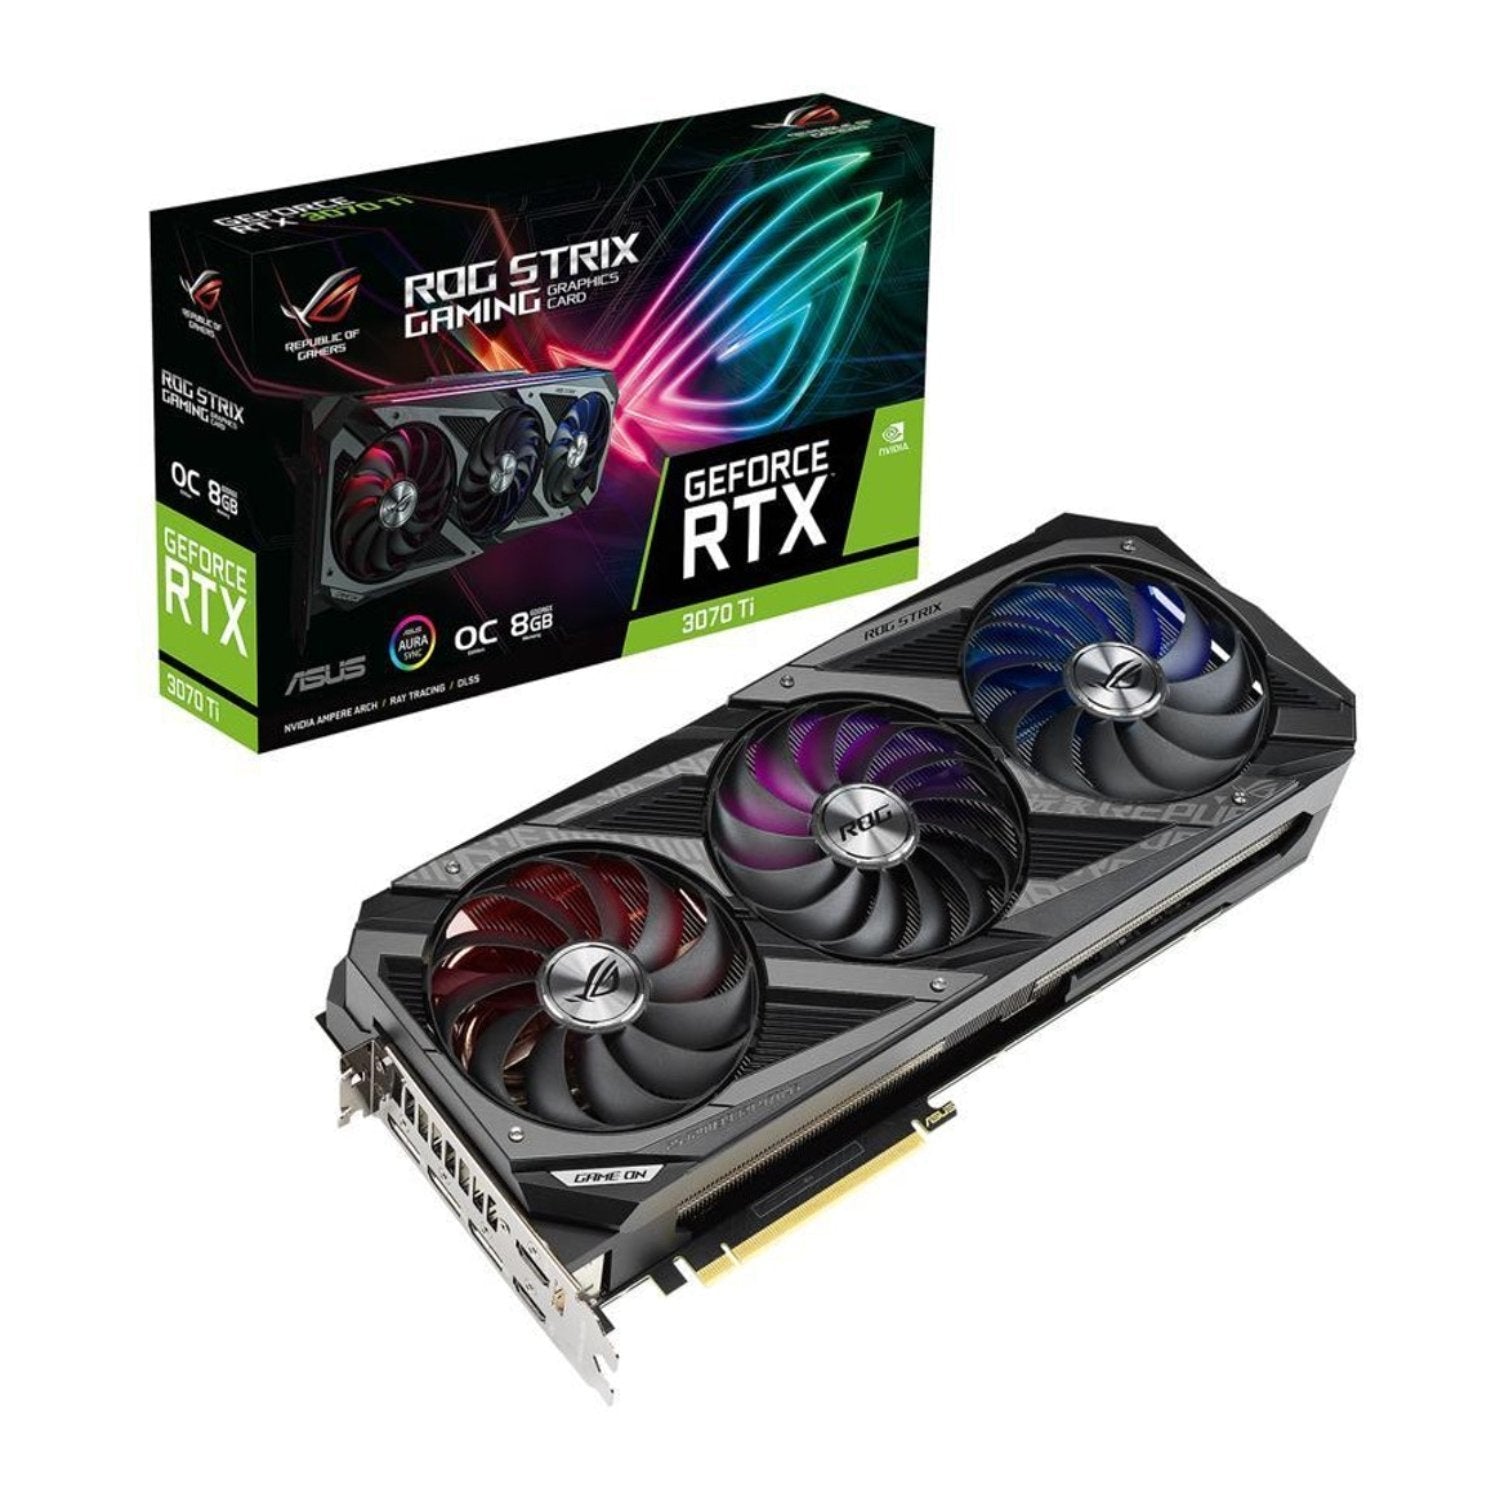 Asus ROG Strix GeForce RTX 3070Ti OC 8GB GDDR6X - Store 974 | ستور ٩٧٤